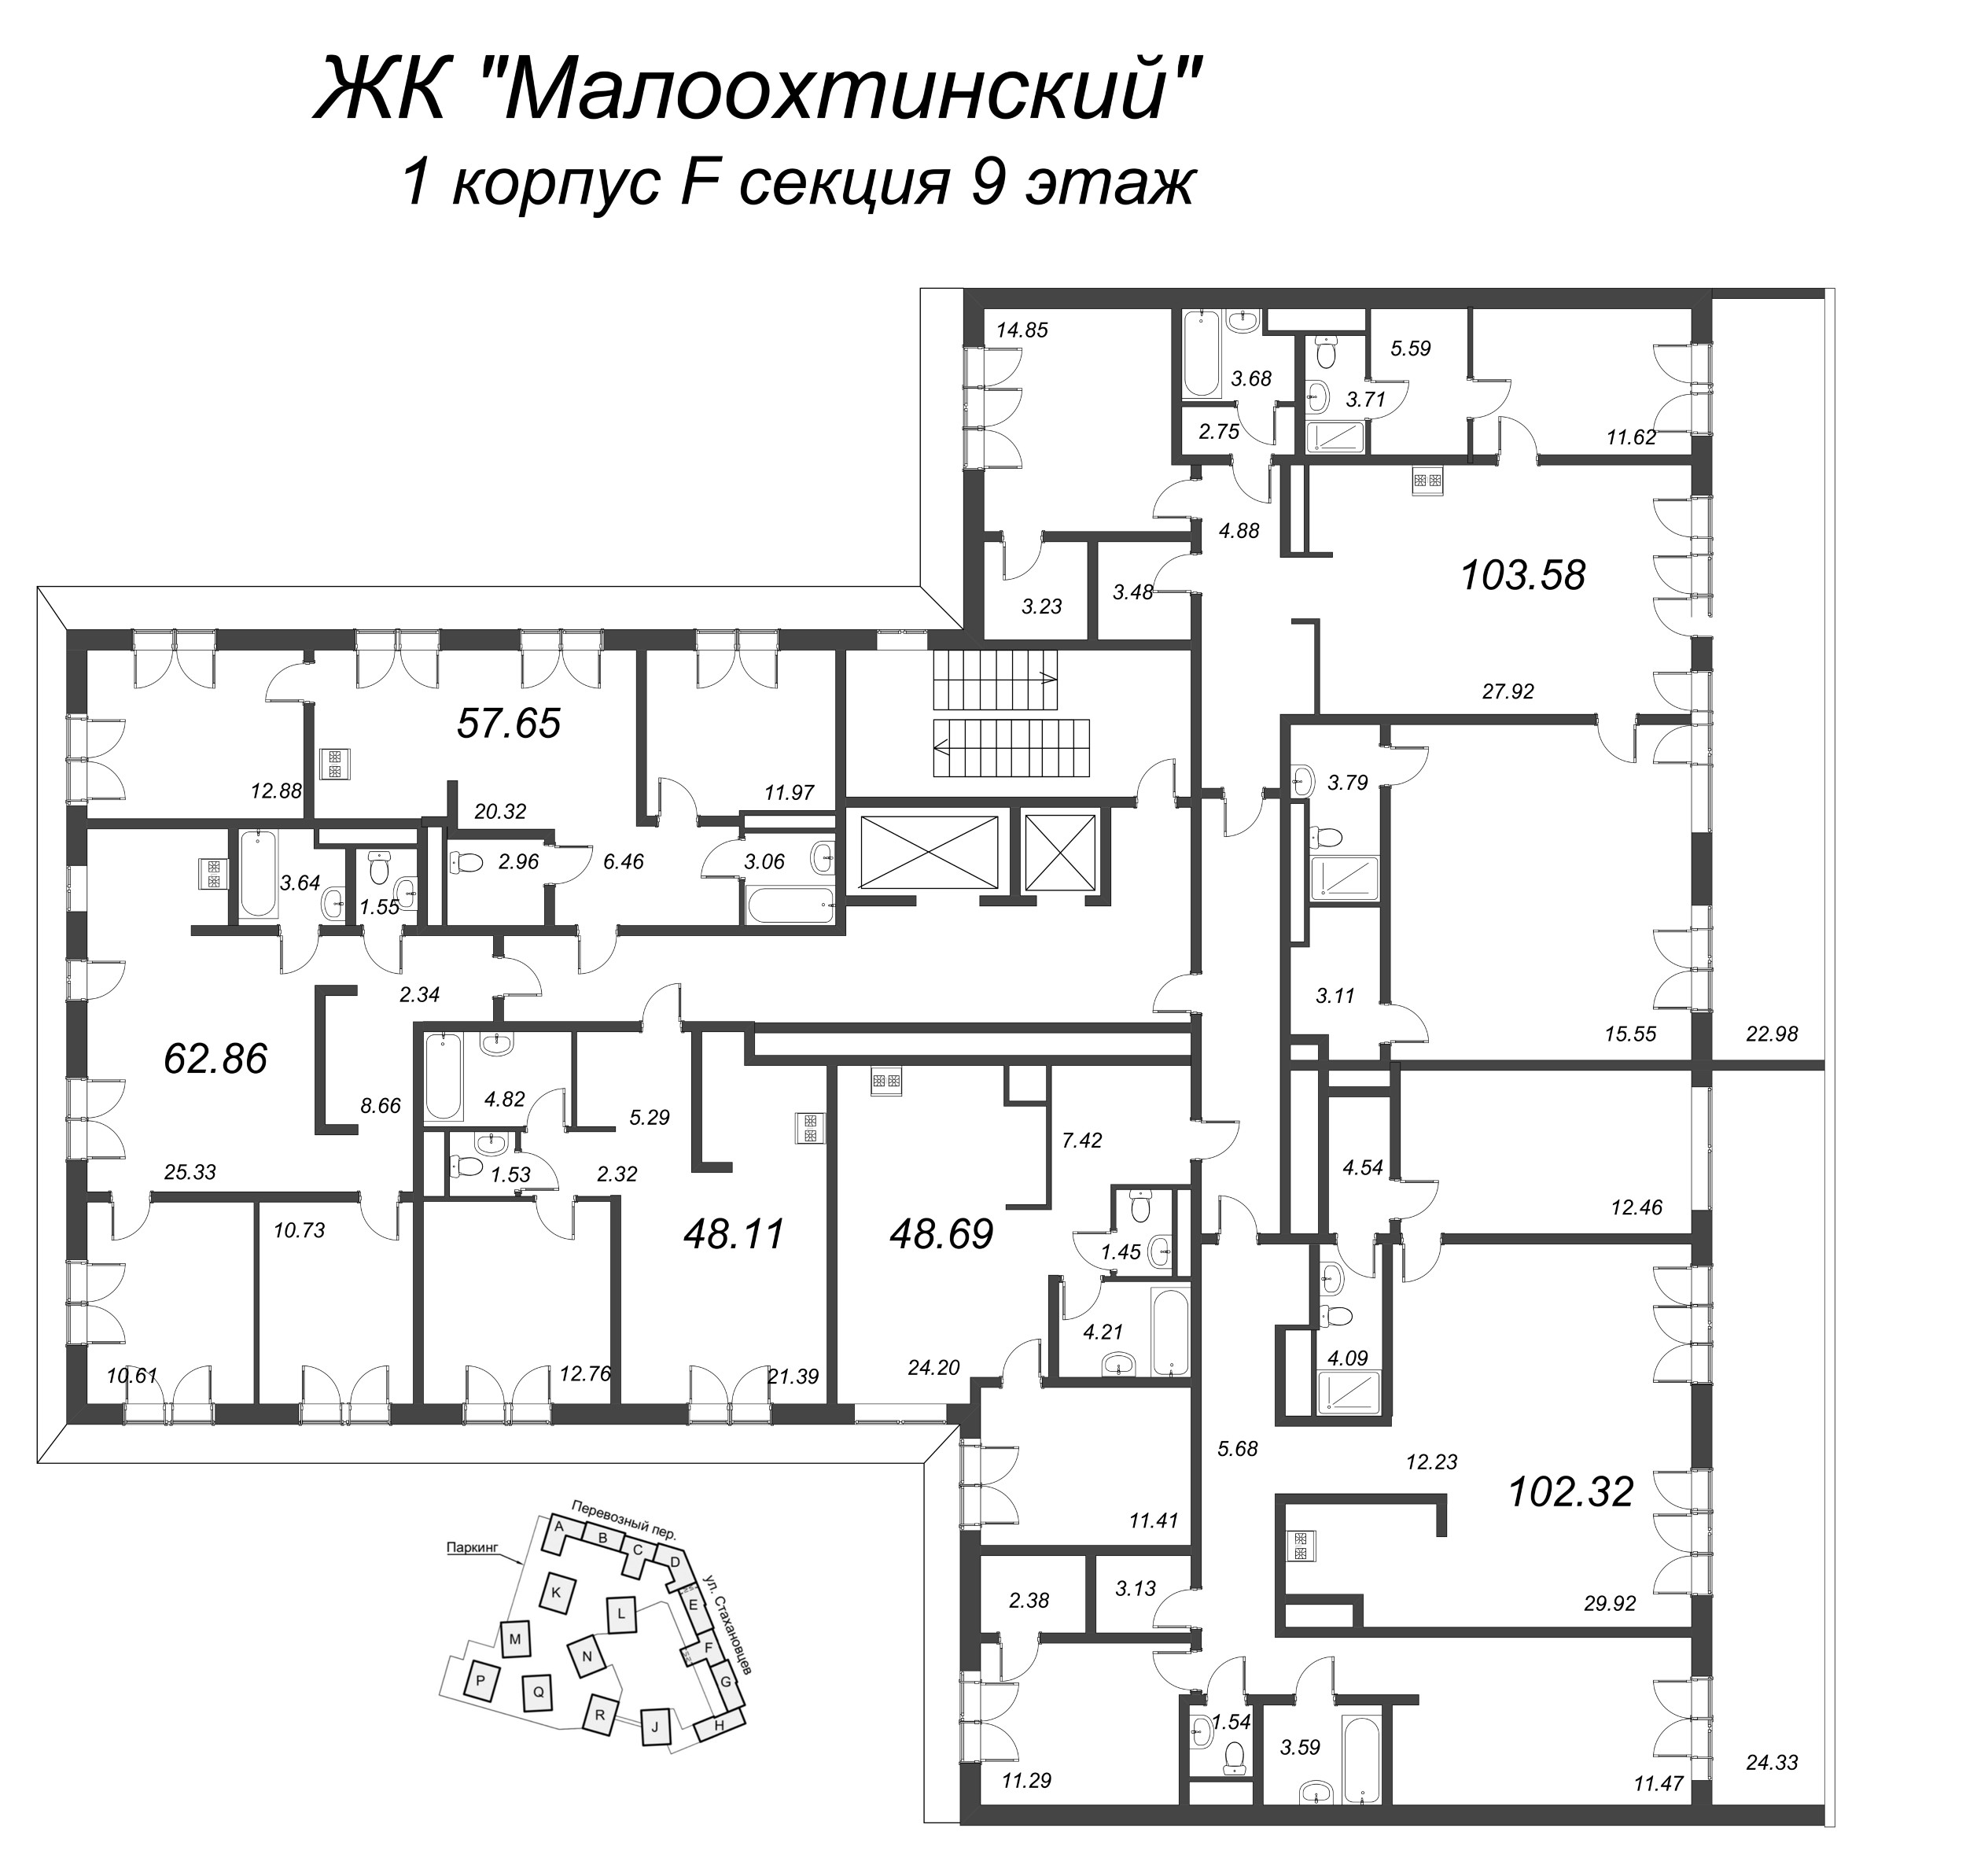 2-комнатная (Евро) квартира, 49.5 м² в ЖК "Малоохтинский, 68" - планировка этажа